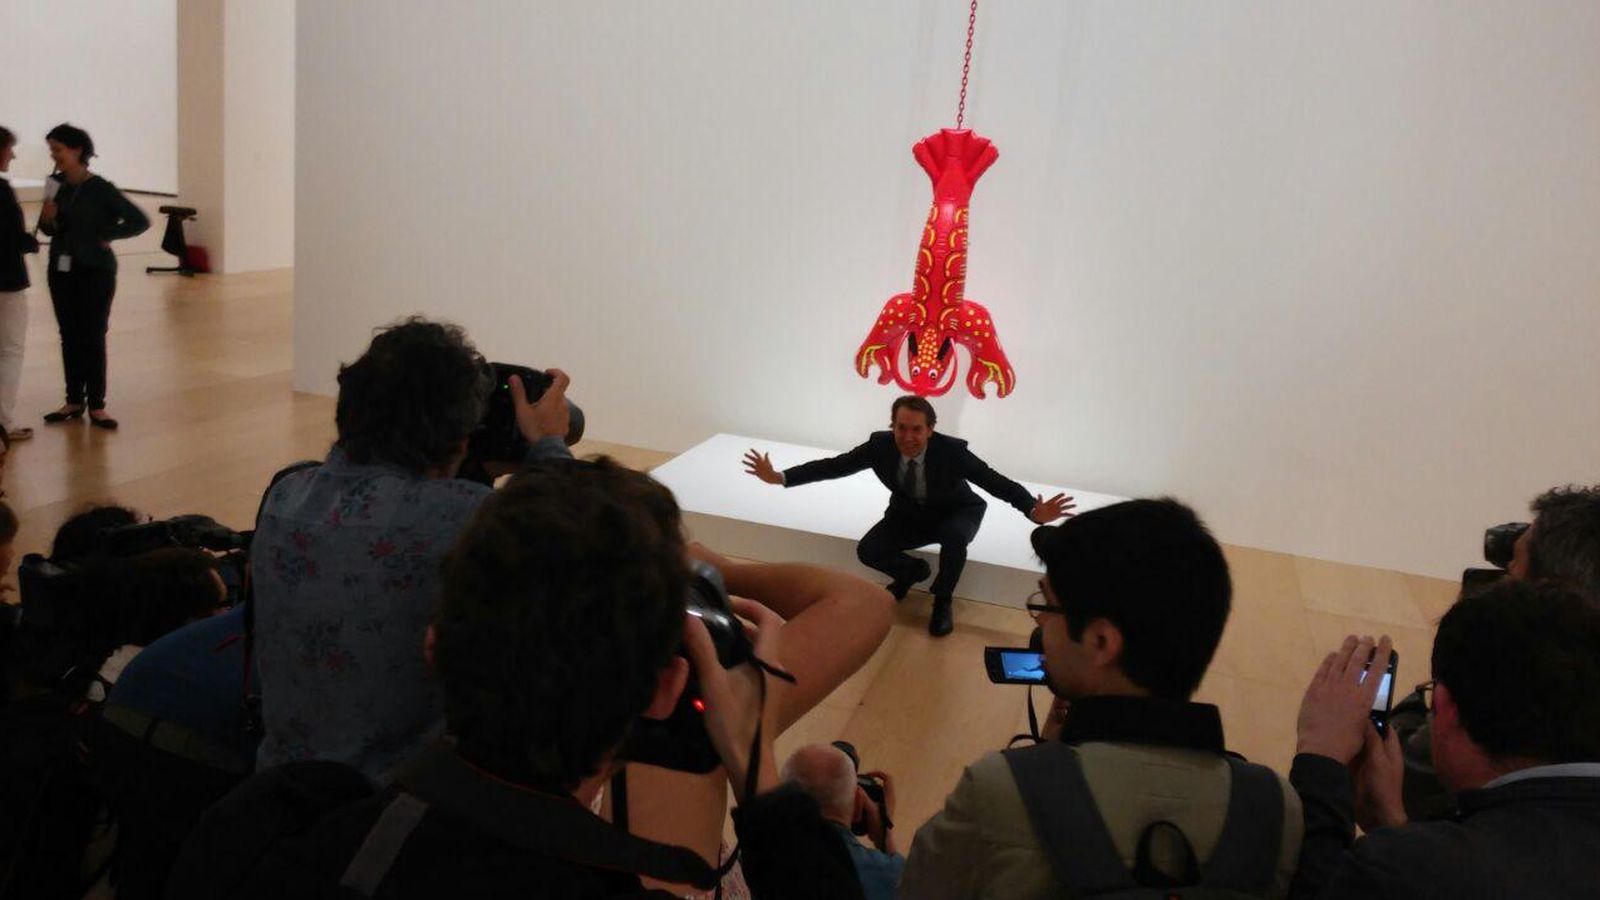 Foto: Jeff Koons posa junto a una obra en la presentación de su retrospectiva en el Guggenheim (P.H.R)